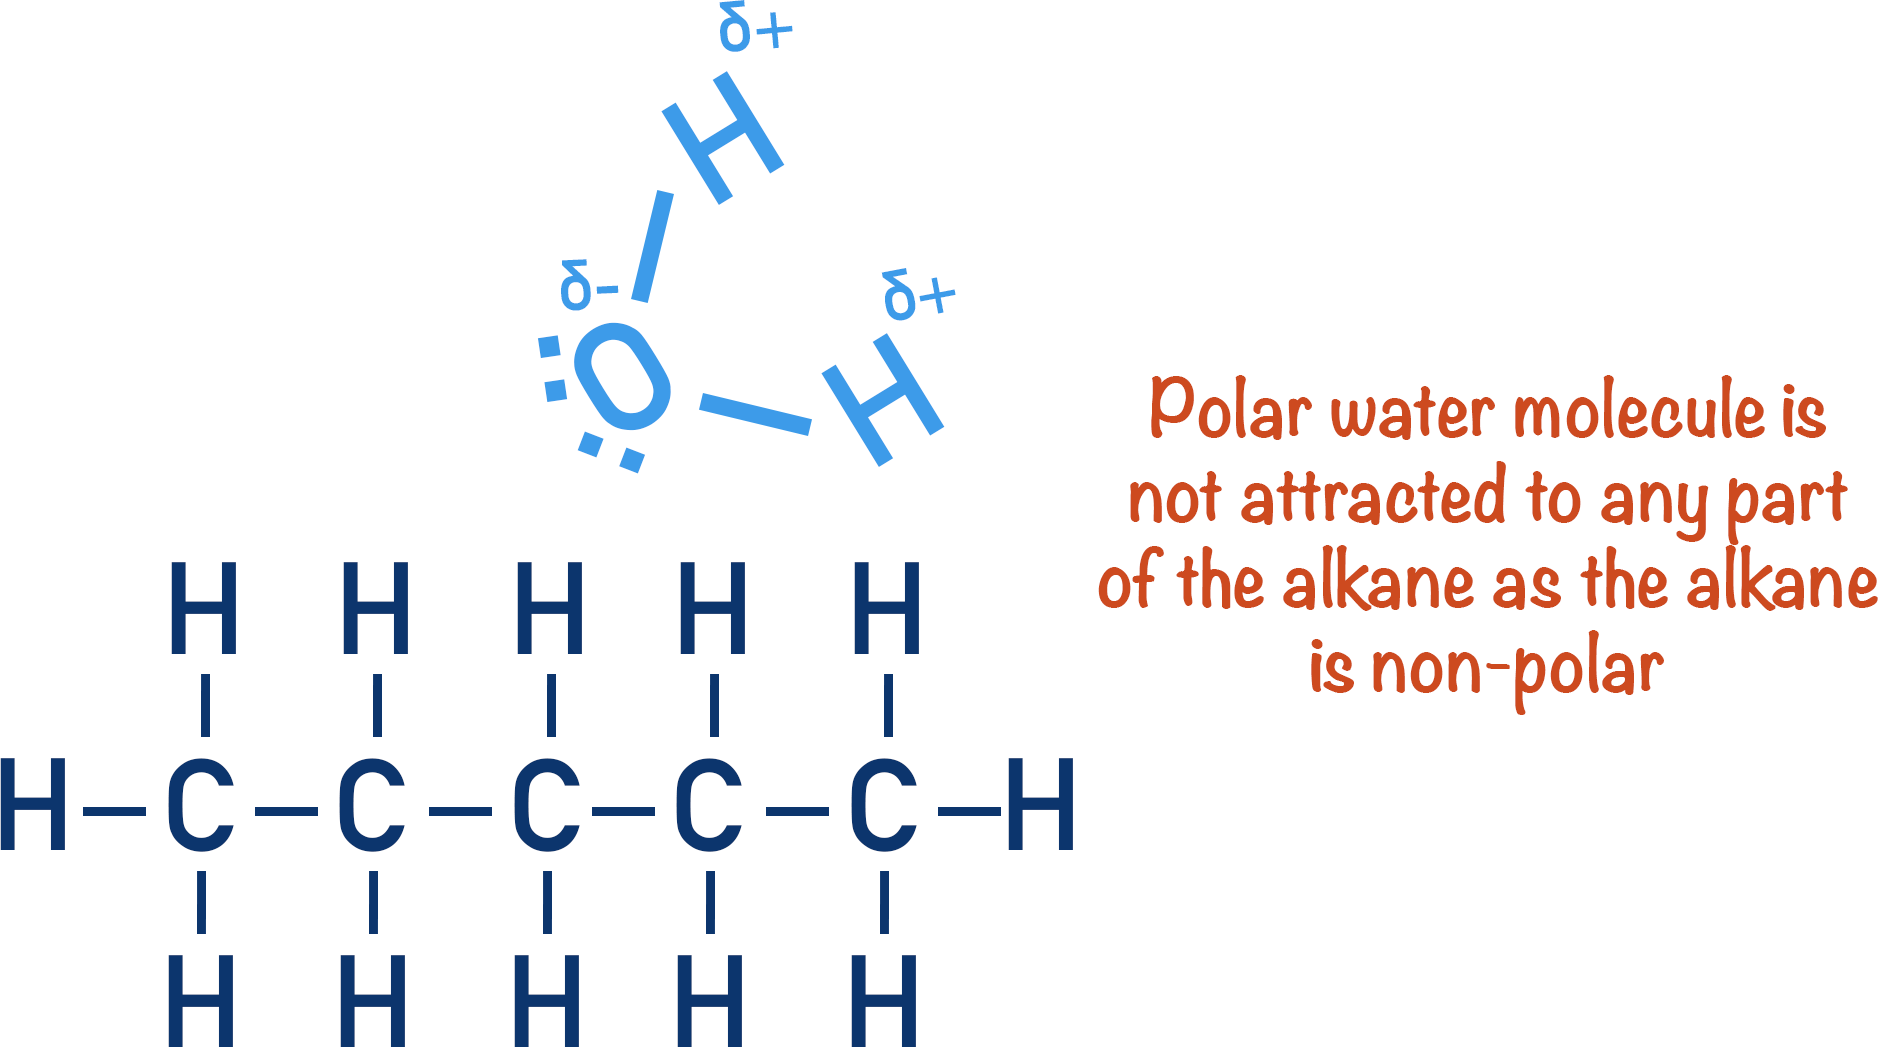 alkanes non-polar with water pentane